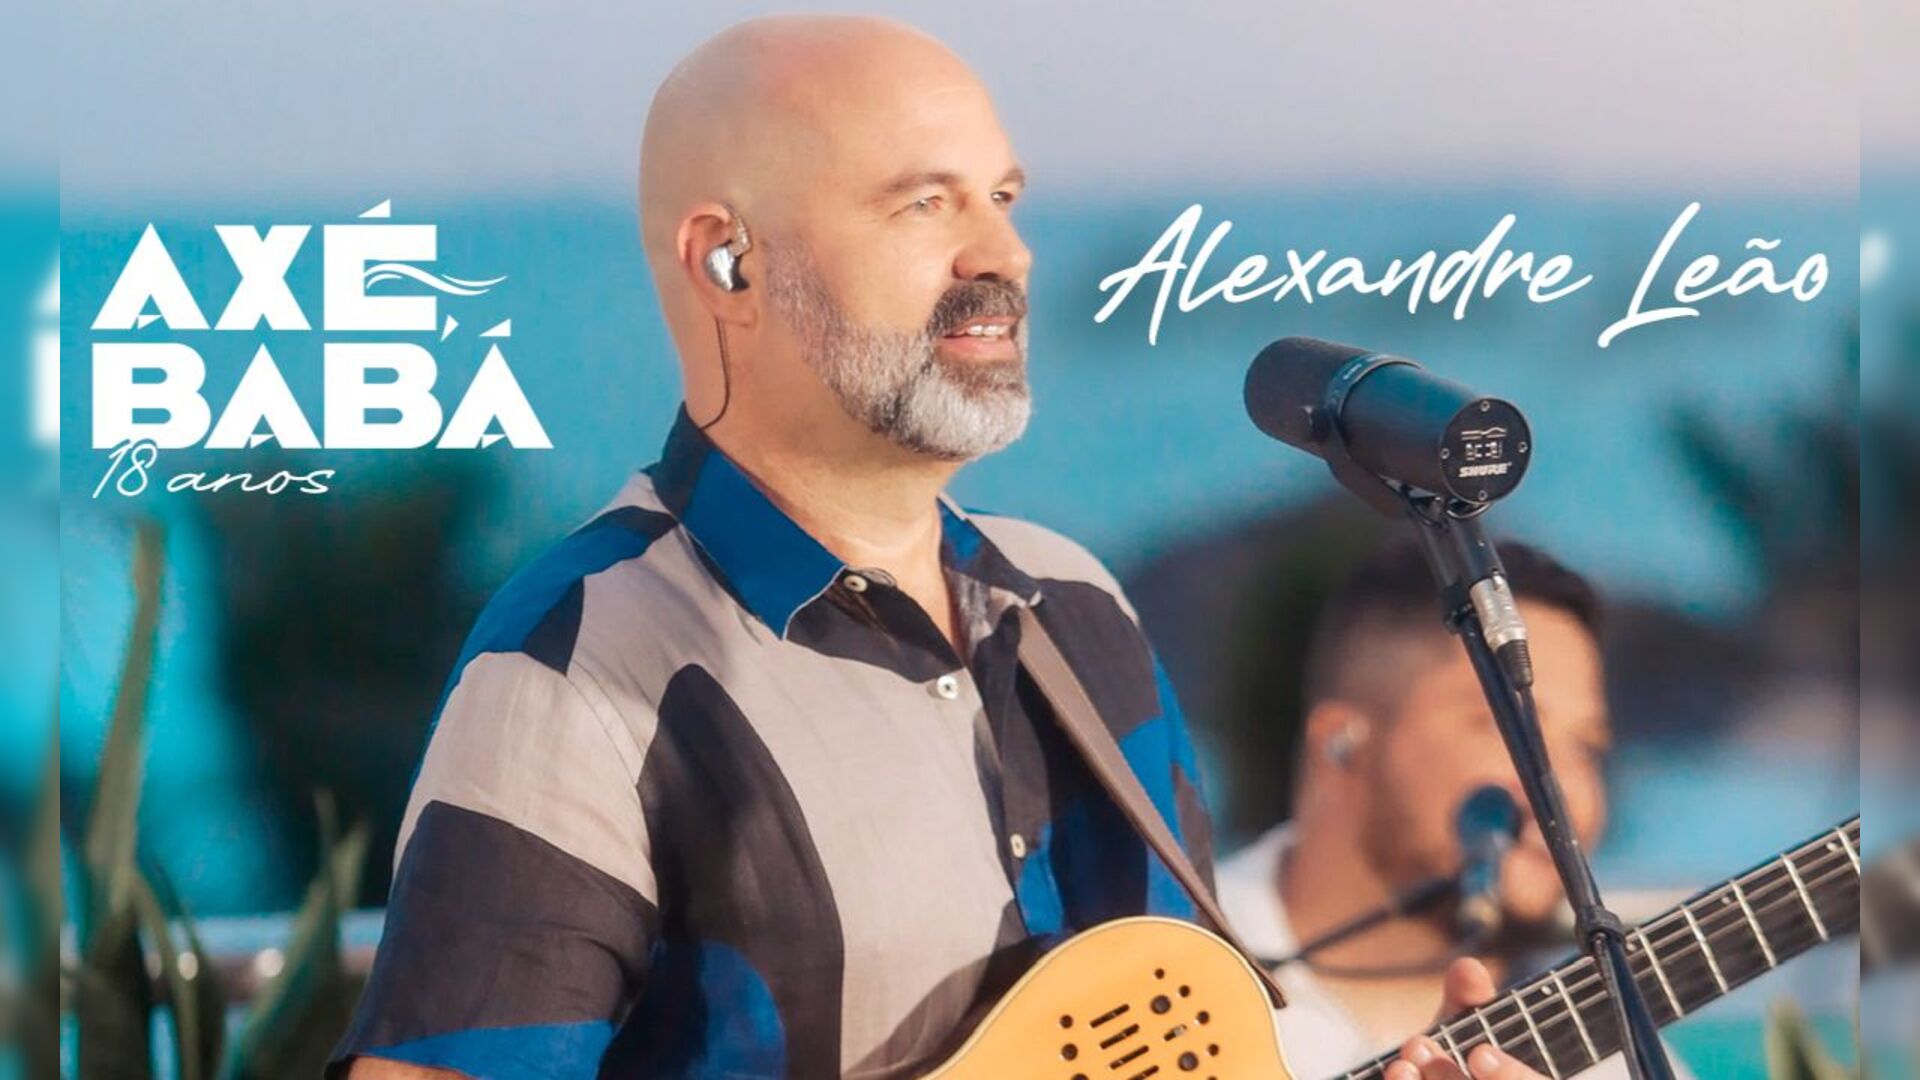 No momento você está vendo Alexandre Leão festeja o álbum “Axé, Babá 18 anos”